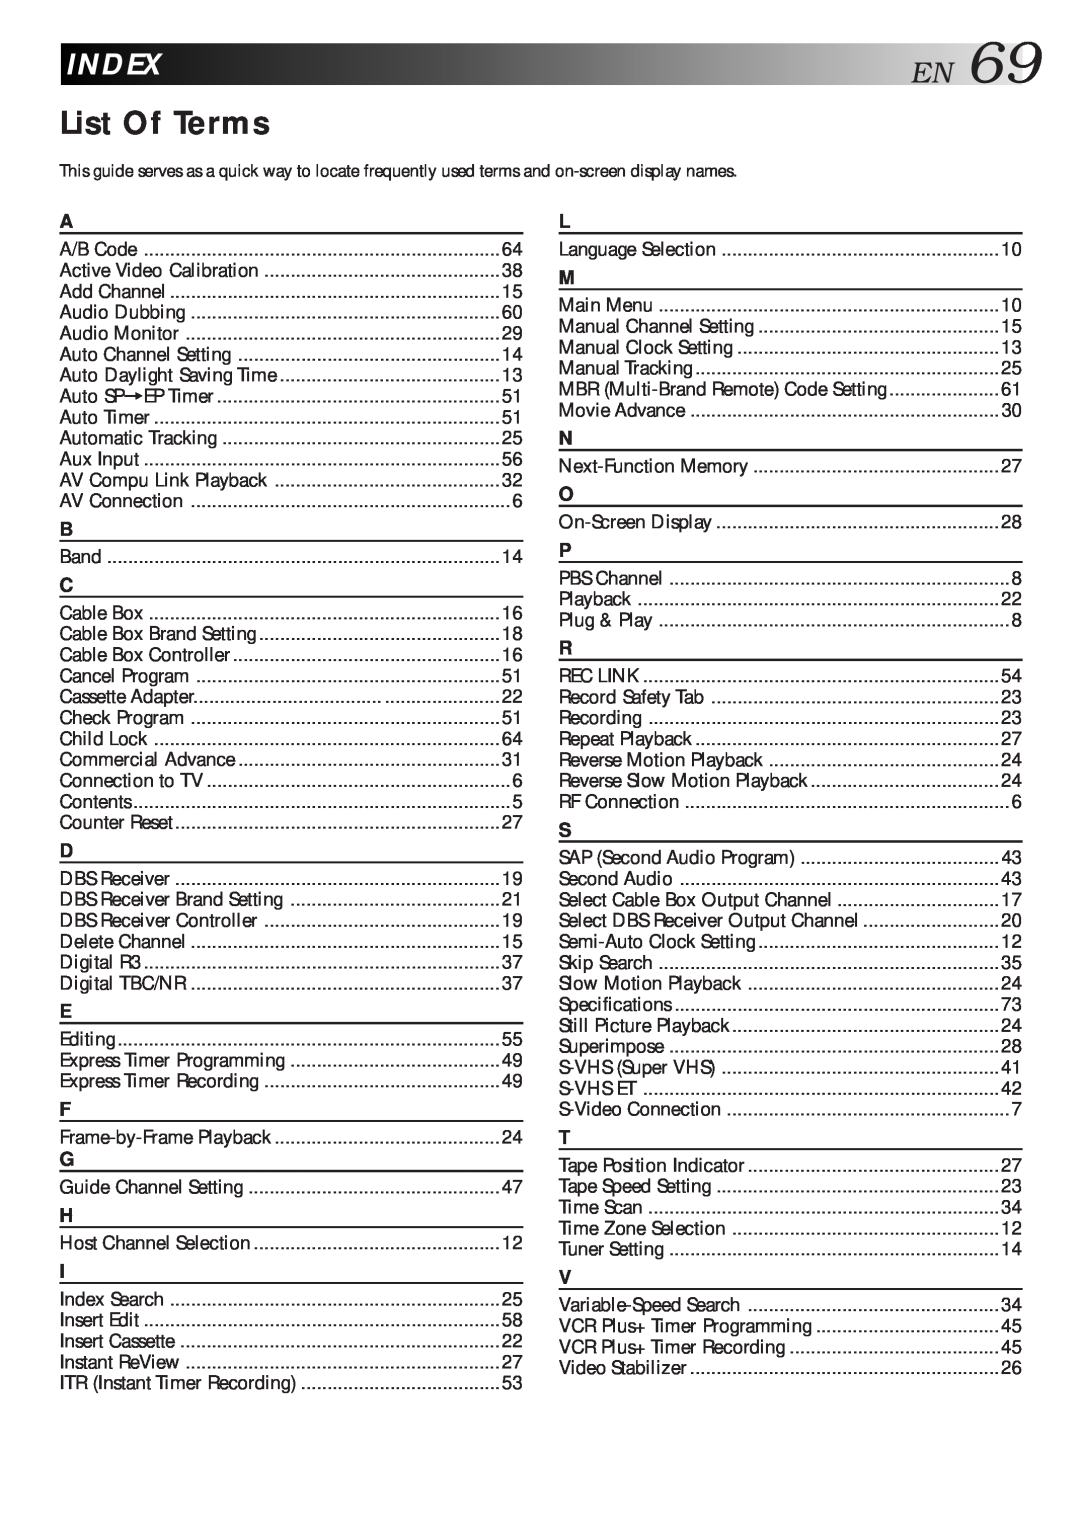 JVC HR-S7500U manual Index, List Of Terms, EN69 